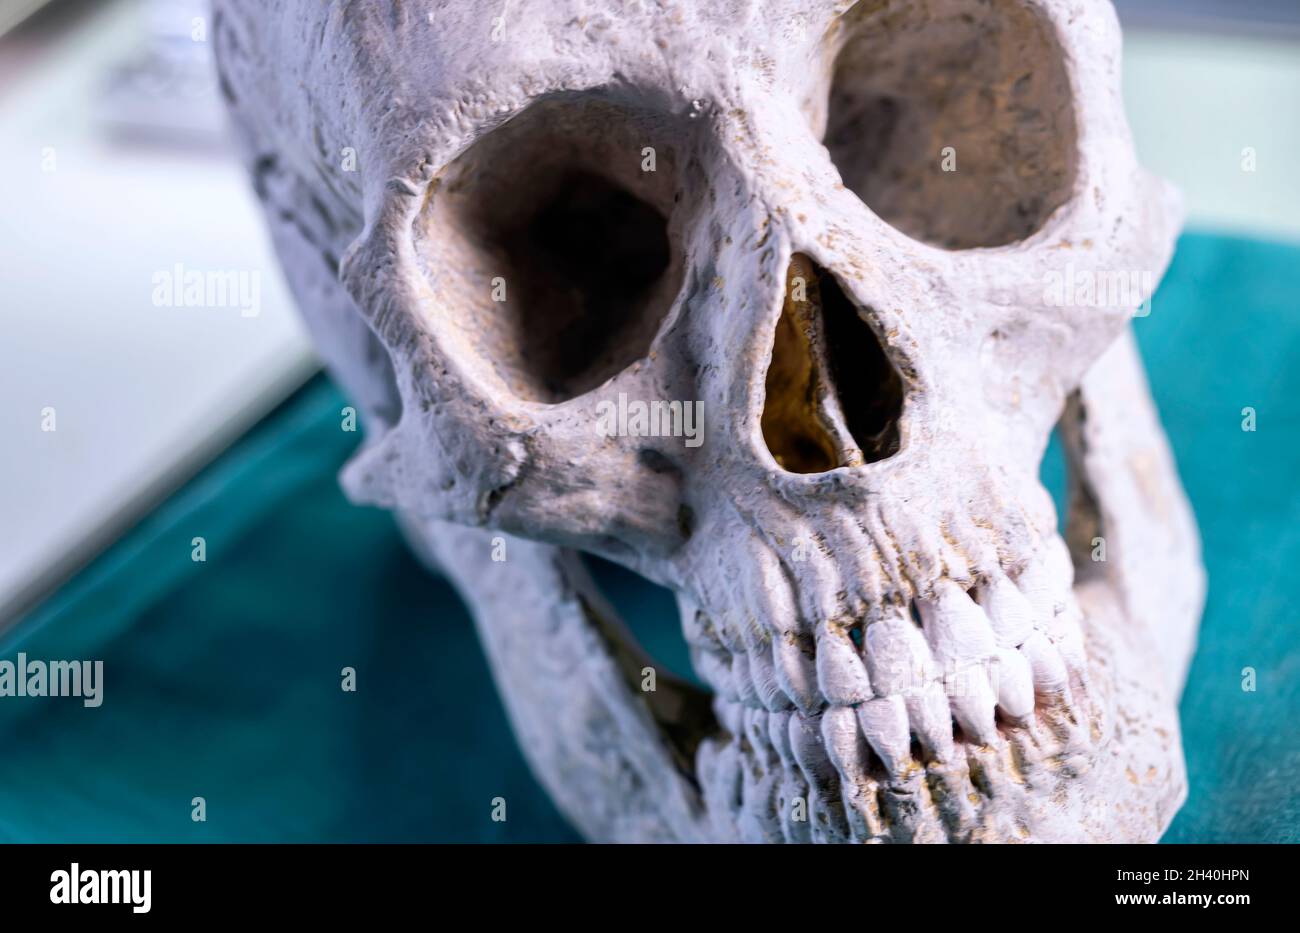 Détail du crâne adulte dans un laboratoire de crime, image conceptuelle Banque D'Images